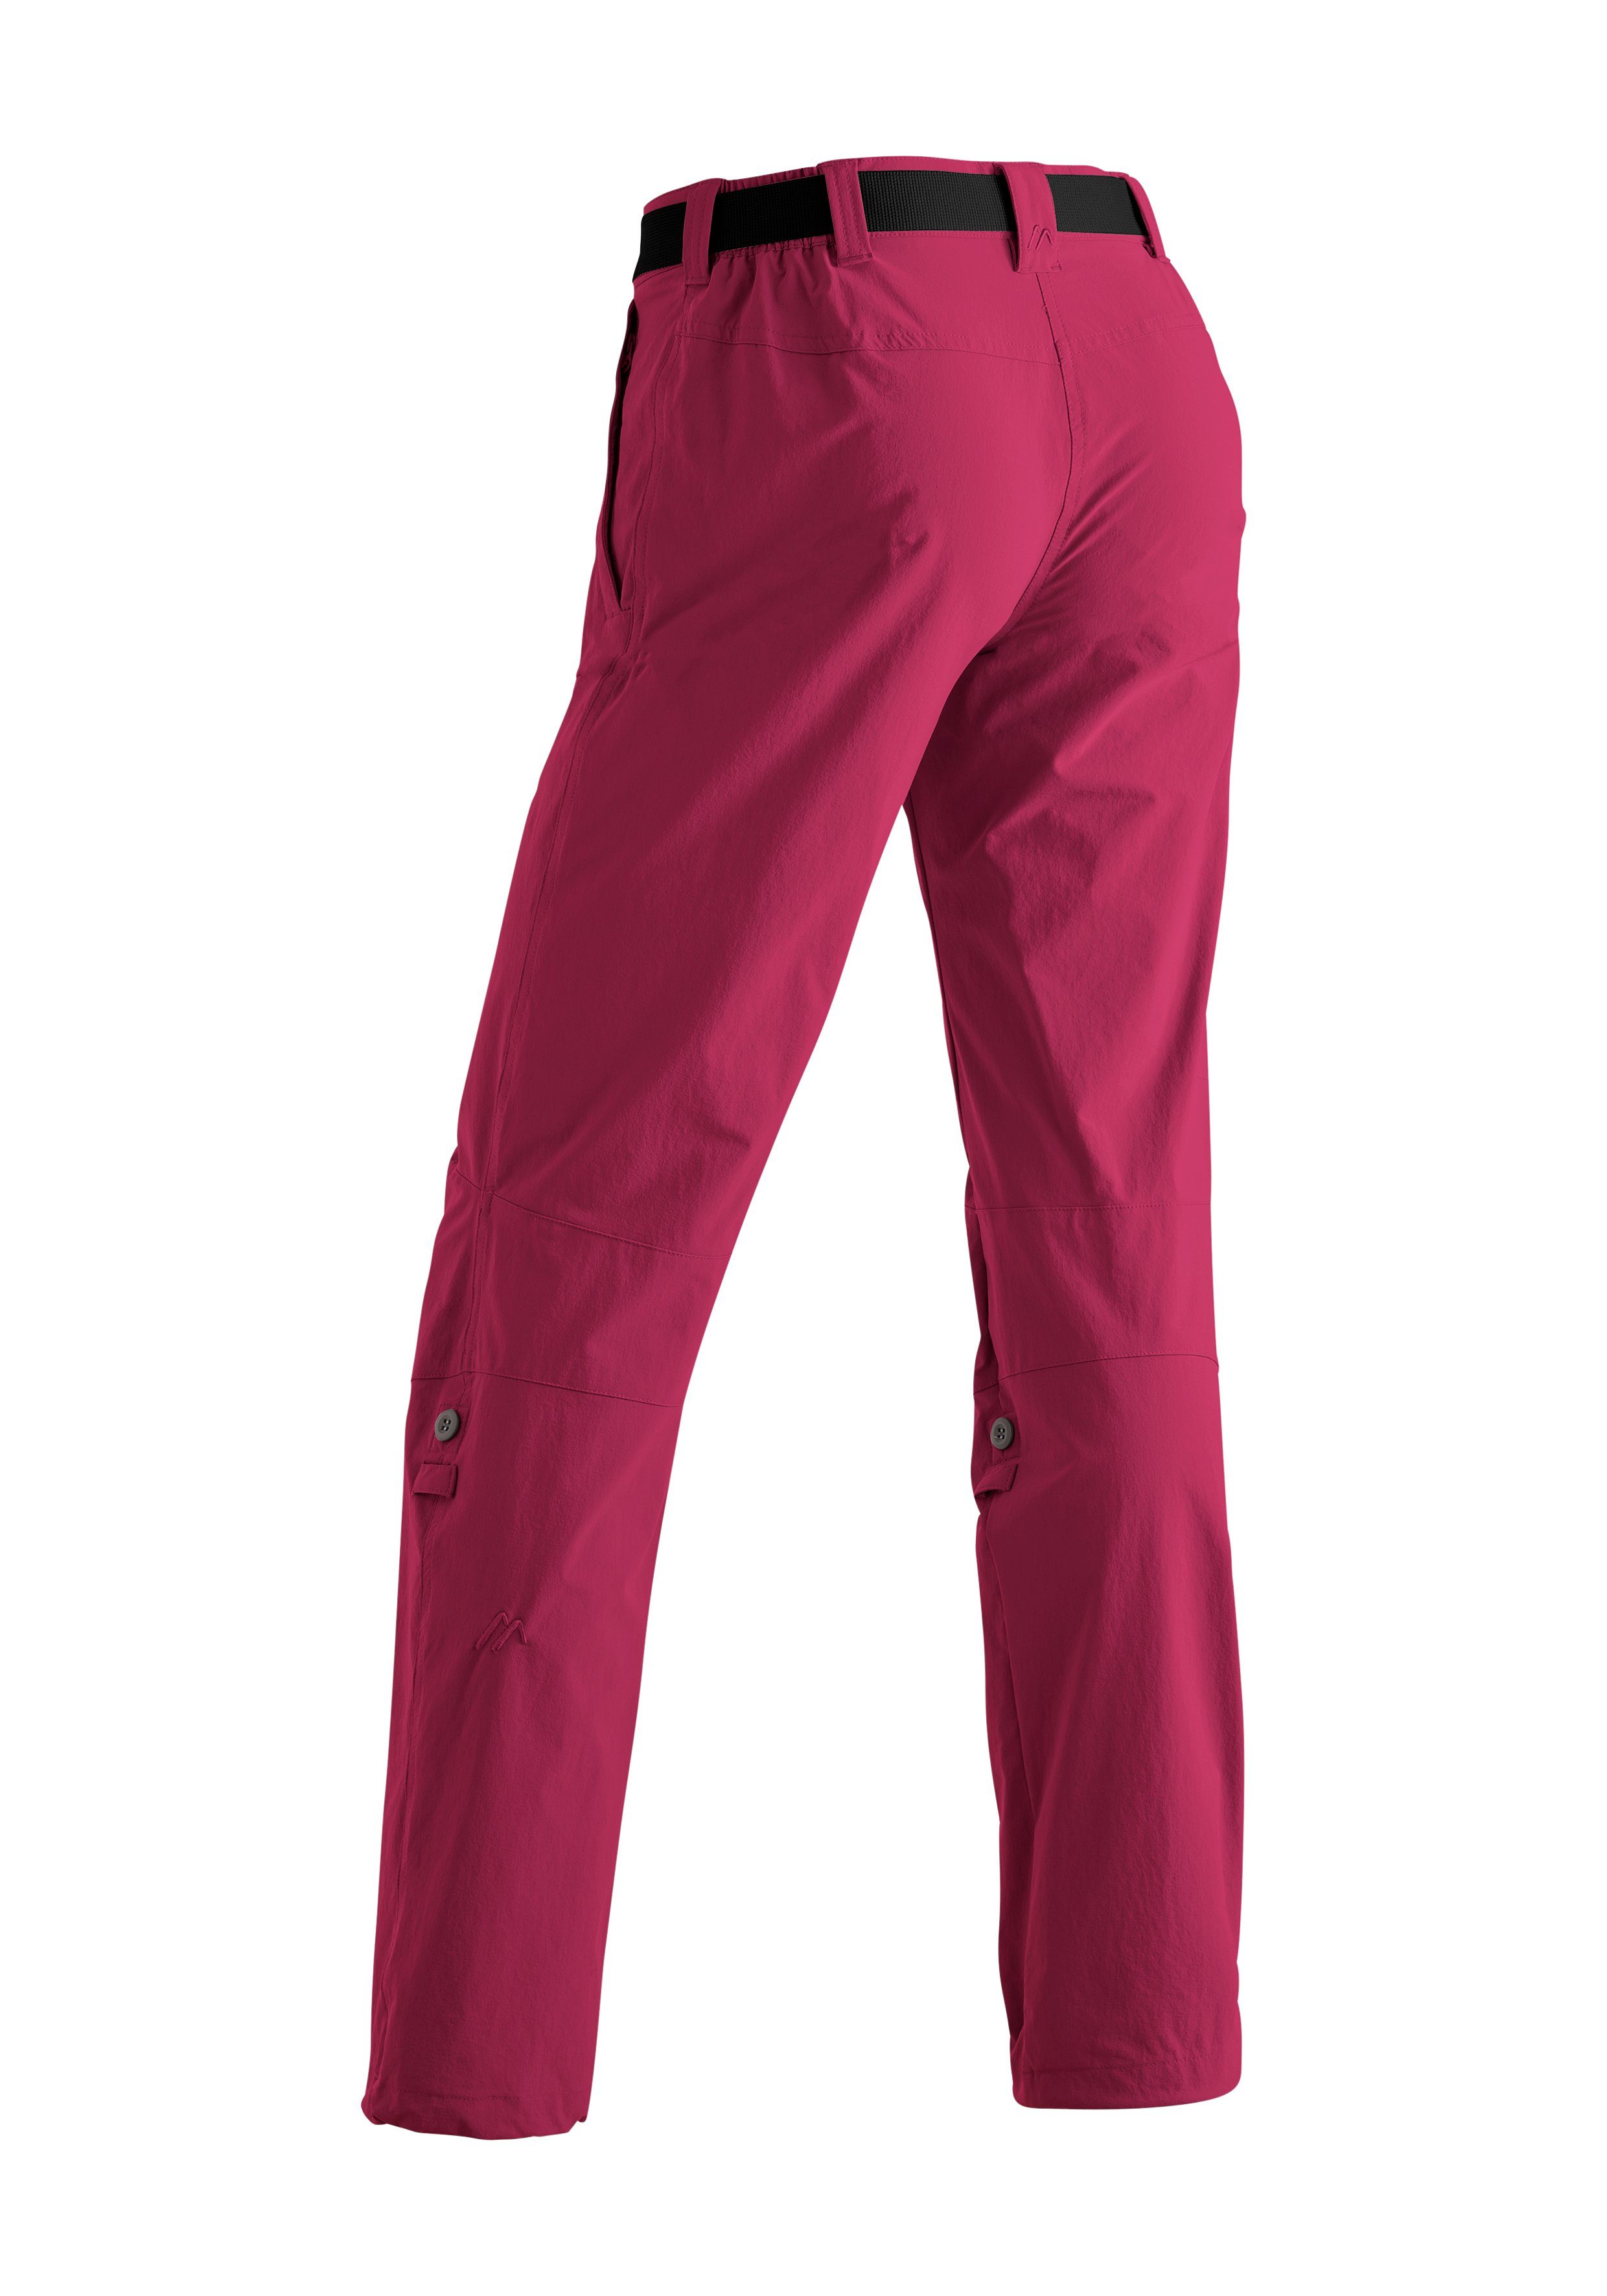 Roll Damen Outdoor-Hose Lulaka purpurrot Funktion up atmungsaktive Wanderhose, mit Funktionshose Maier Sports